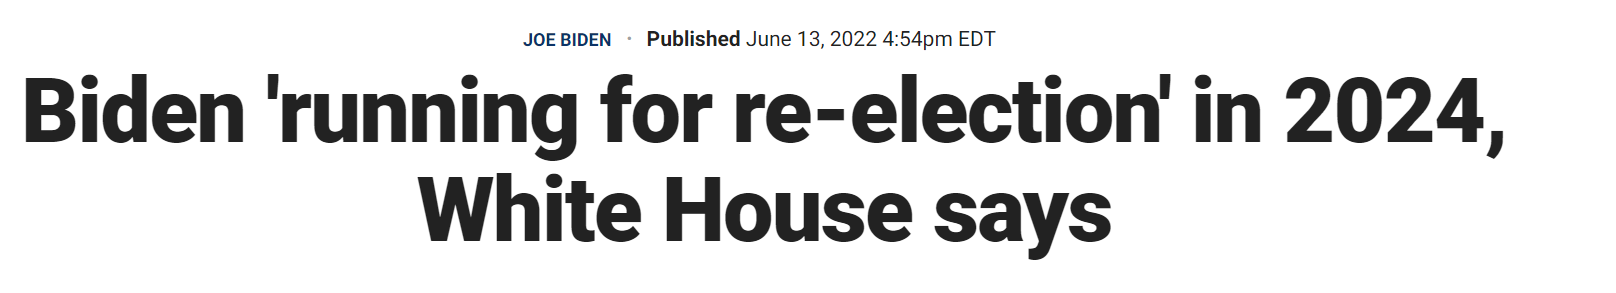 福克斯新闻报道截图：白宫称拜登将在2024年“竞选连任”